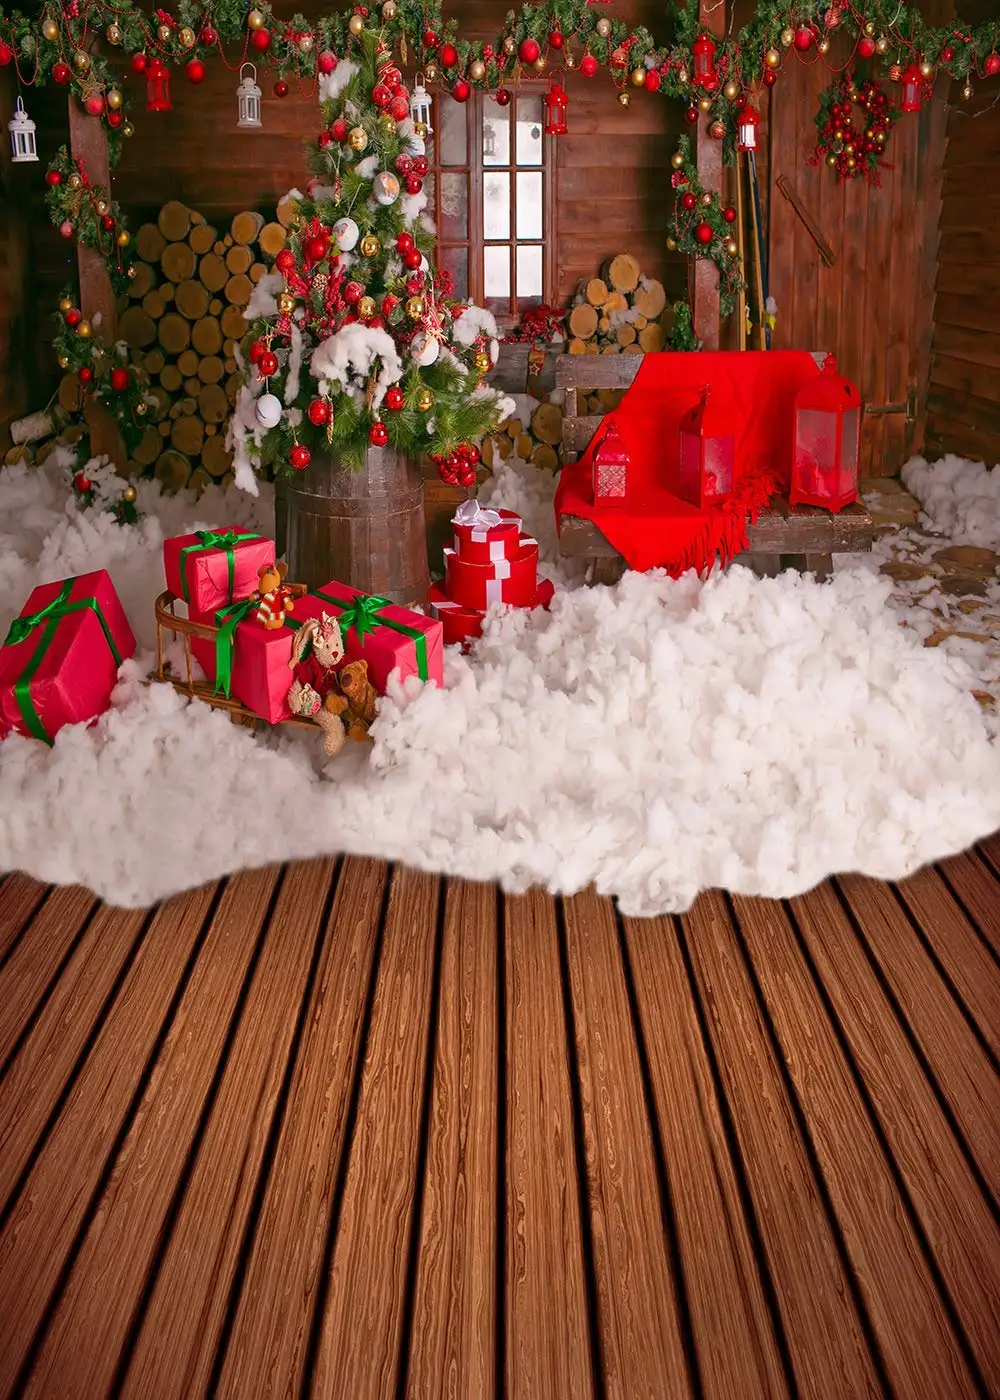 Capisco фон для фотосъемки Рождественская елка праздничный дом деревянный пол Снежный подарок задний фон для рождественские Вечерние Декорации студийный реквизит